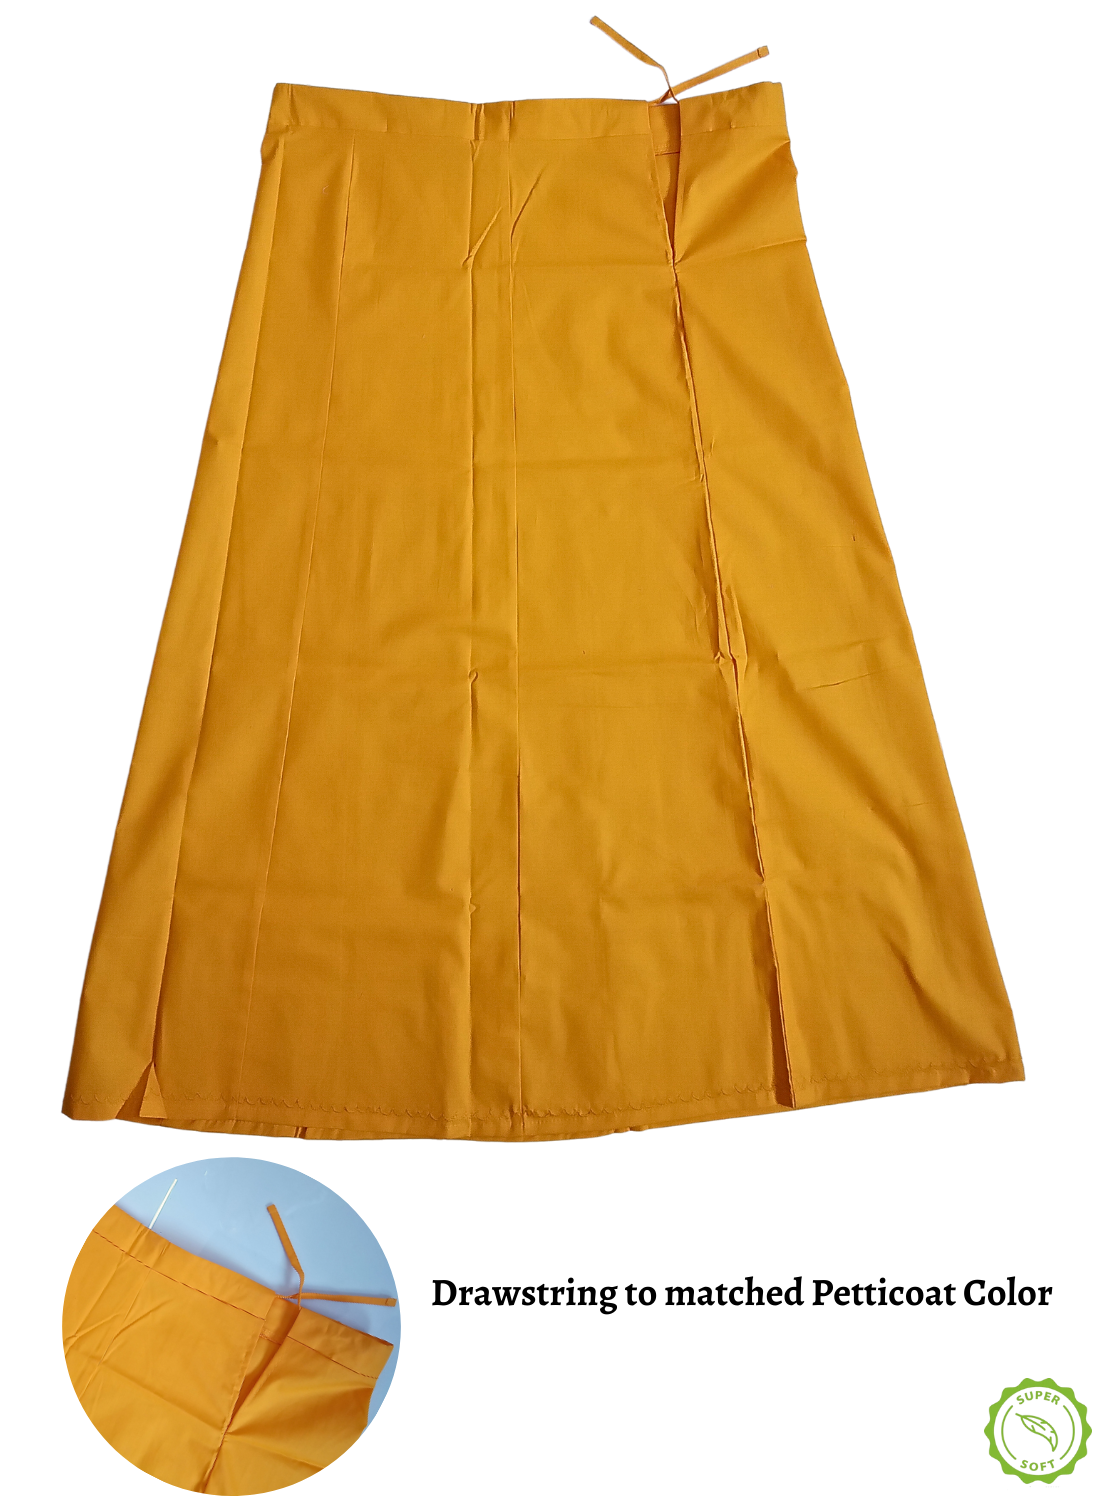 MANGAI Premium Superior Cotton Petticoats - 8 Part Embroidery Design